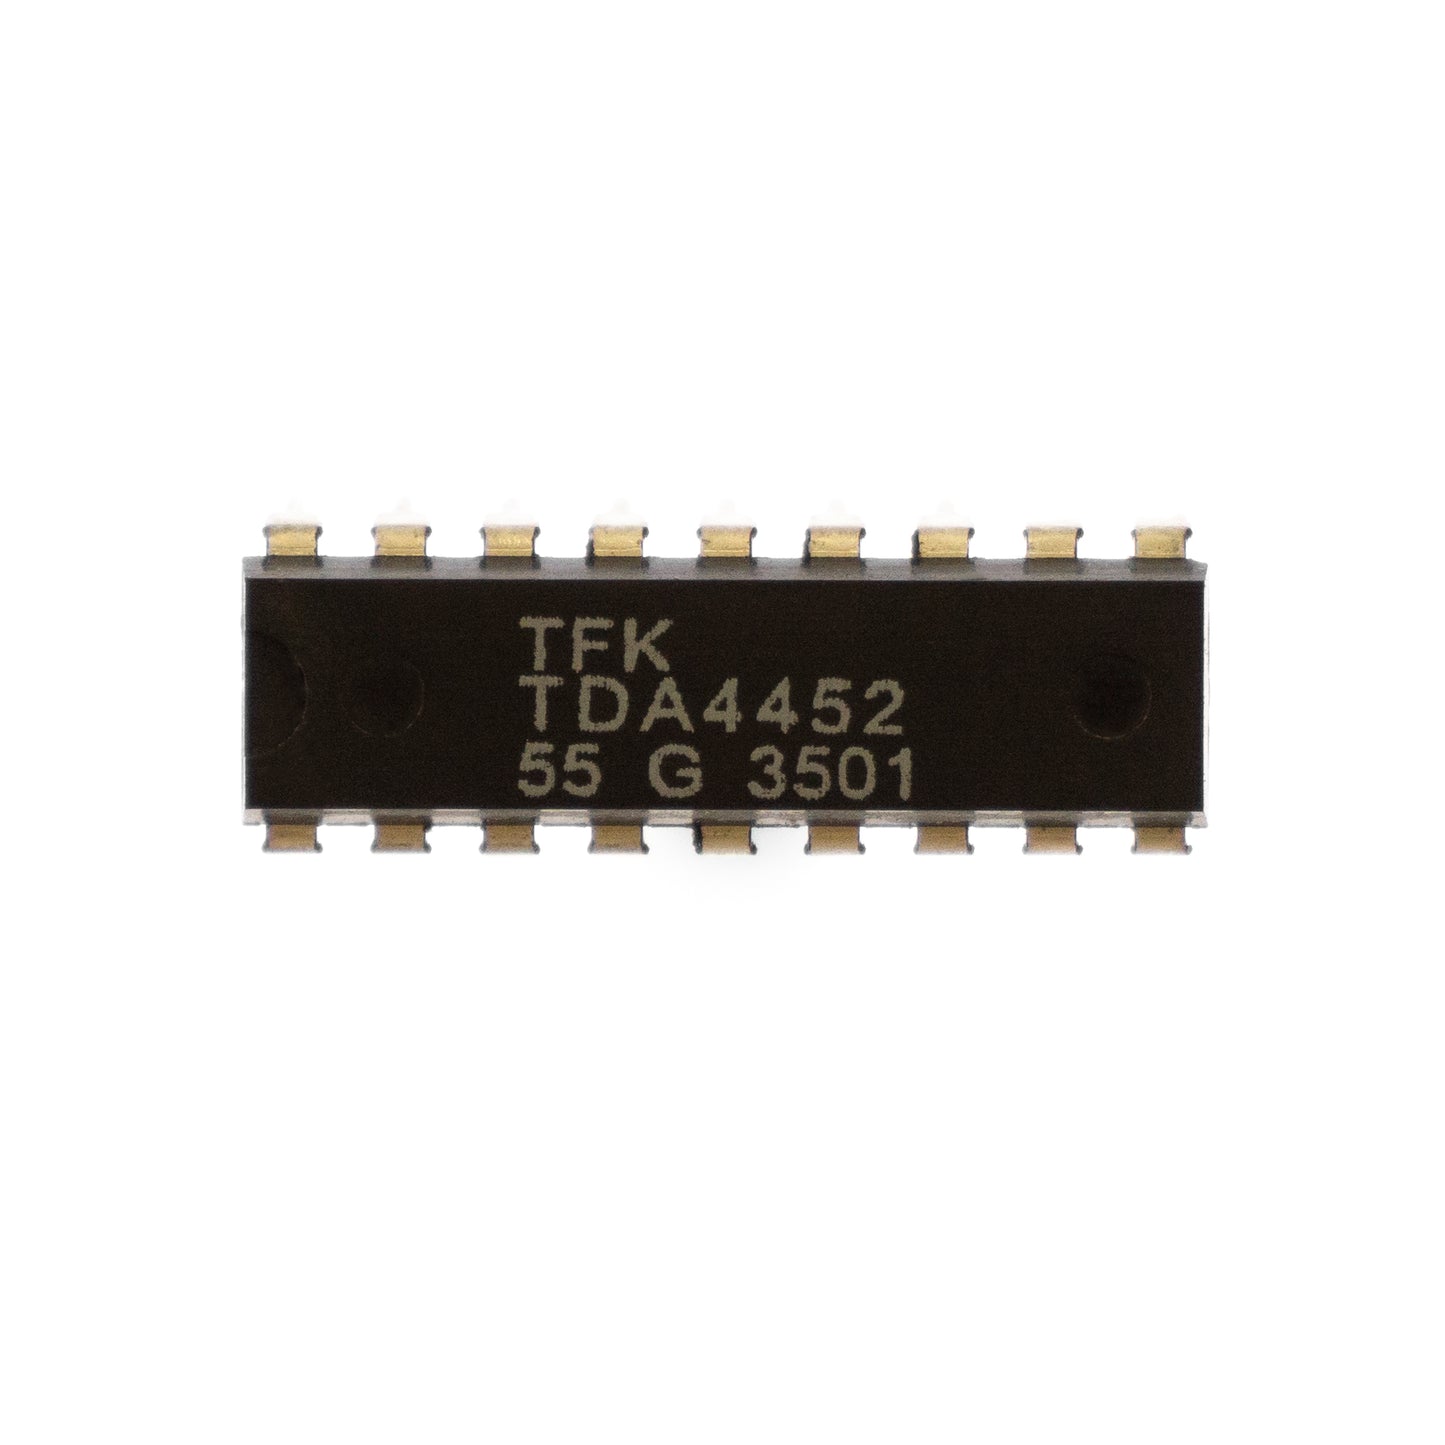 TDA4452 circuito integrato, transistor, componente elettronico, 18 contatti